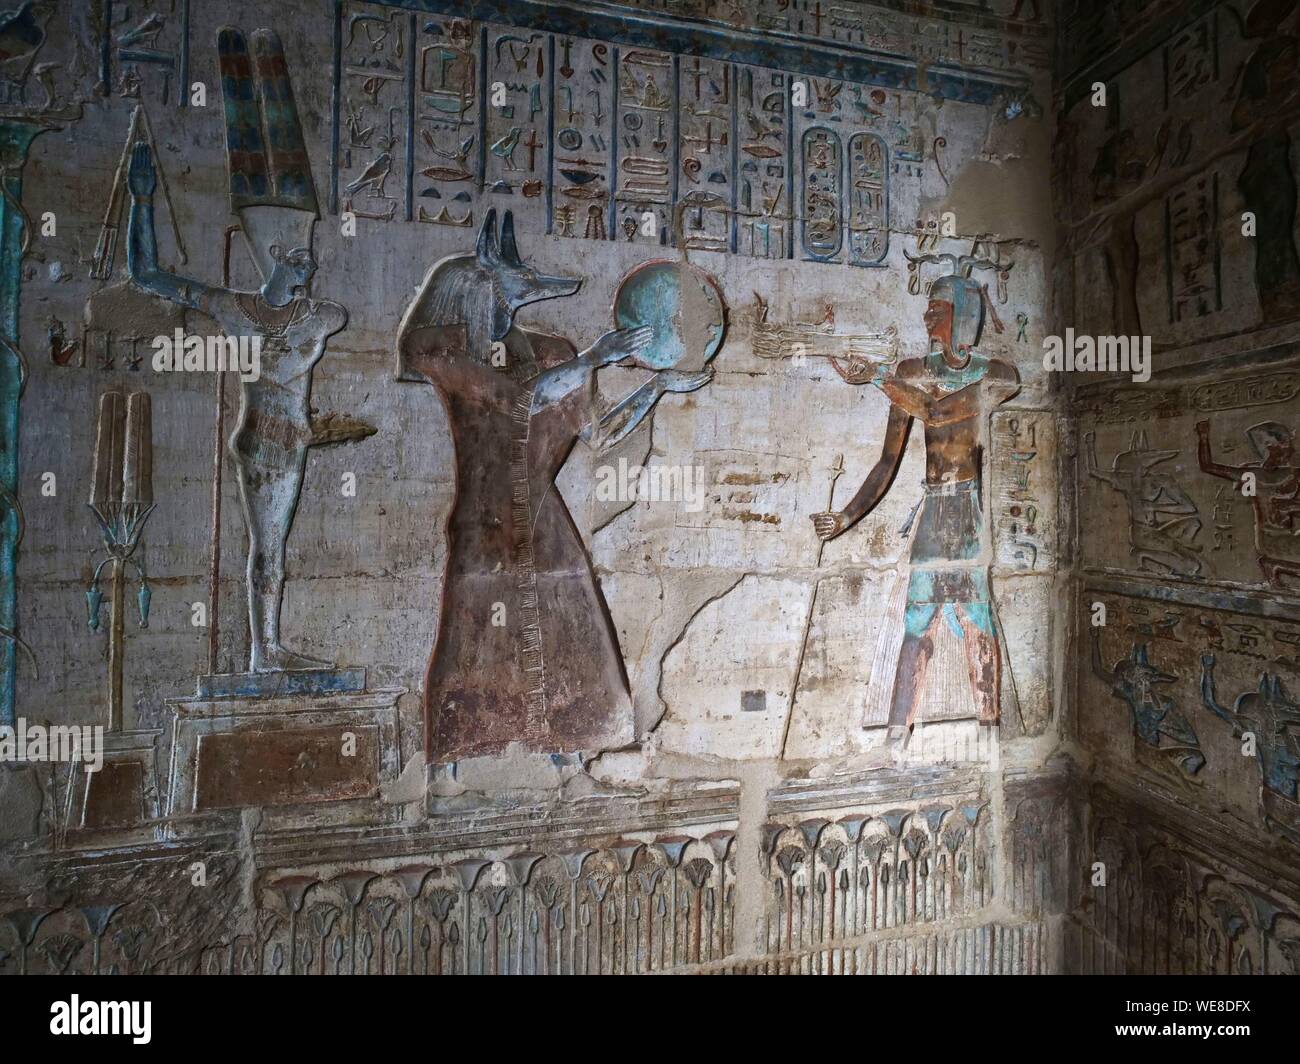 L'Egitto, la Valle del Nilo, necropoli tebana, bassorilievi nel tempio del villaggio di Deir el-Medineh nei pressi di Luxor Foto Stock